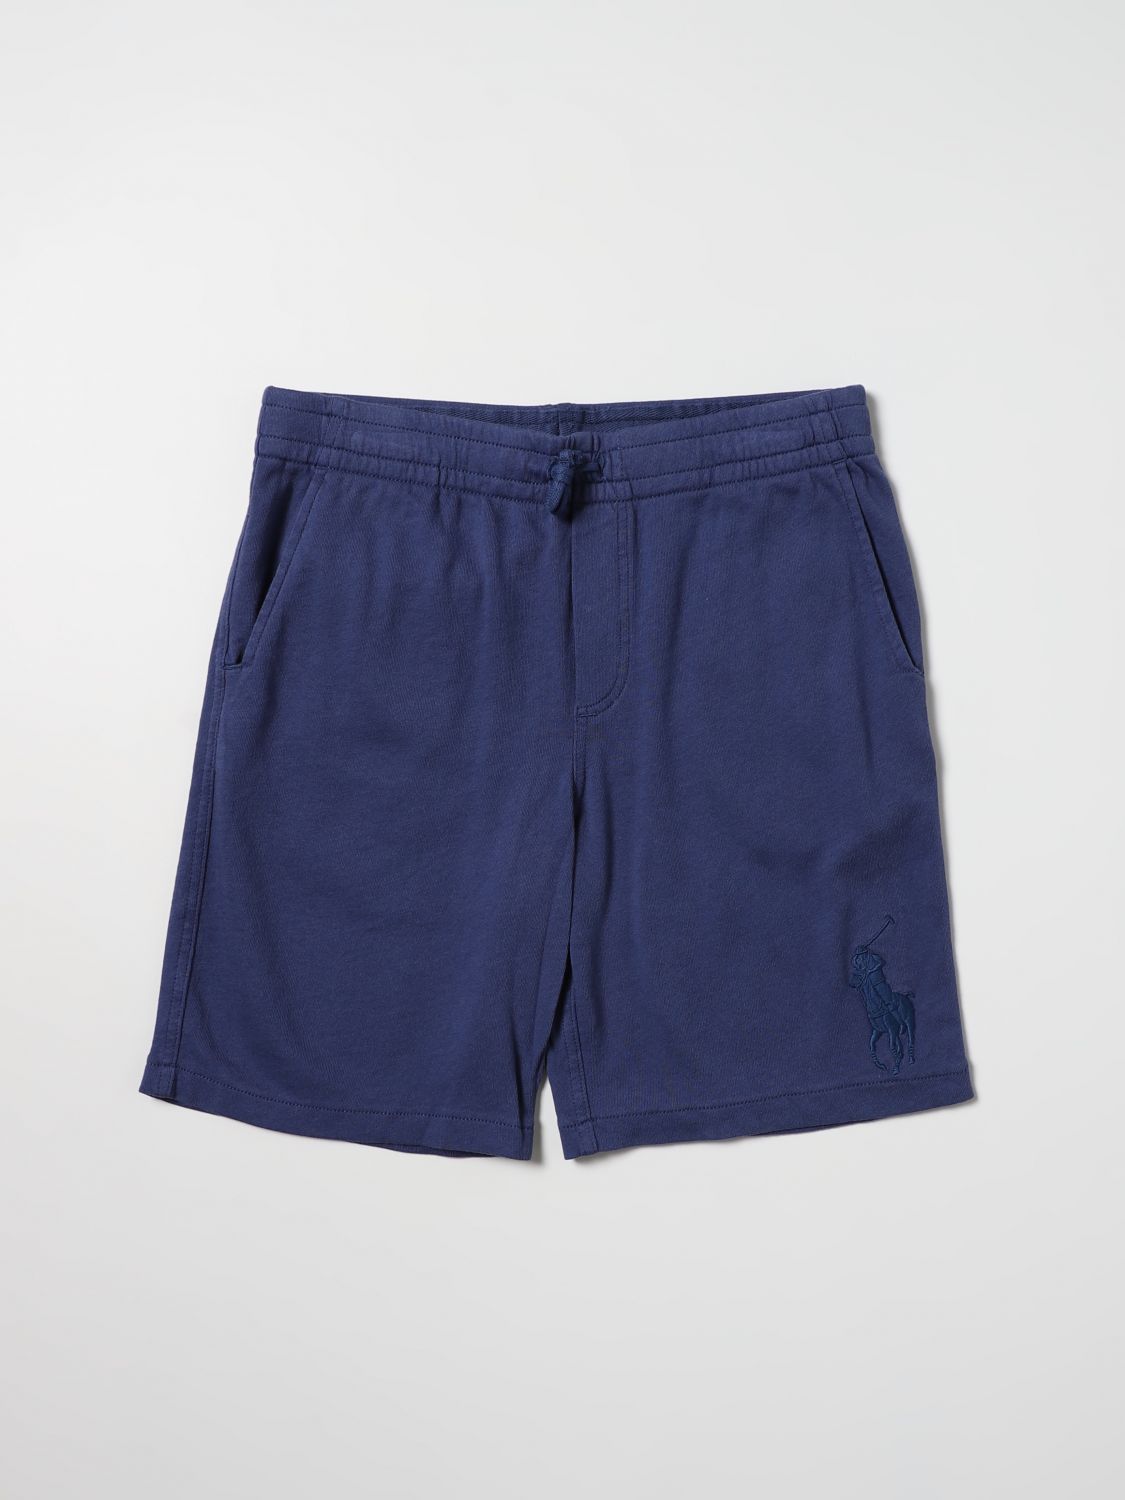 Shorts Polo Ralph Lauren: Polo Ralph Lauren Jungen Shorts blau 1